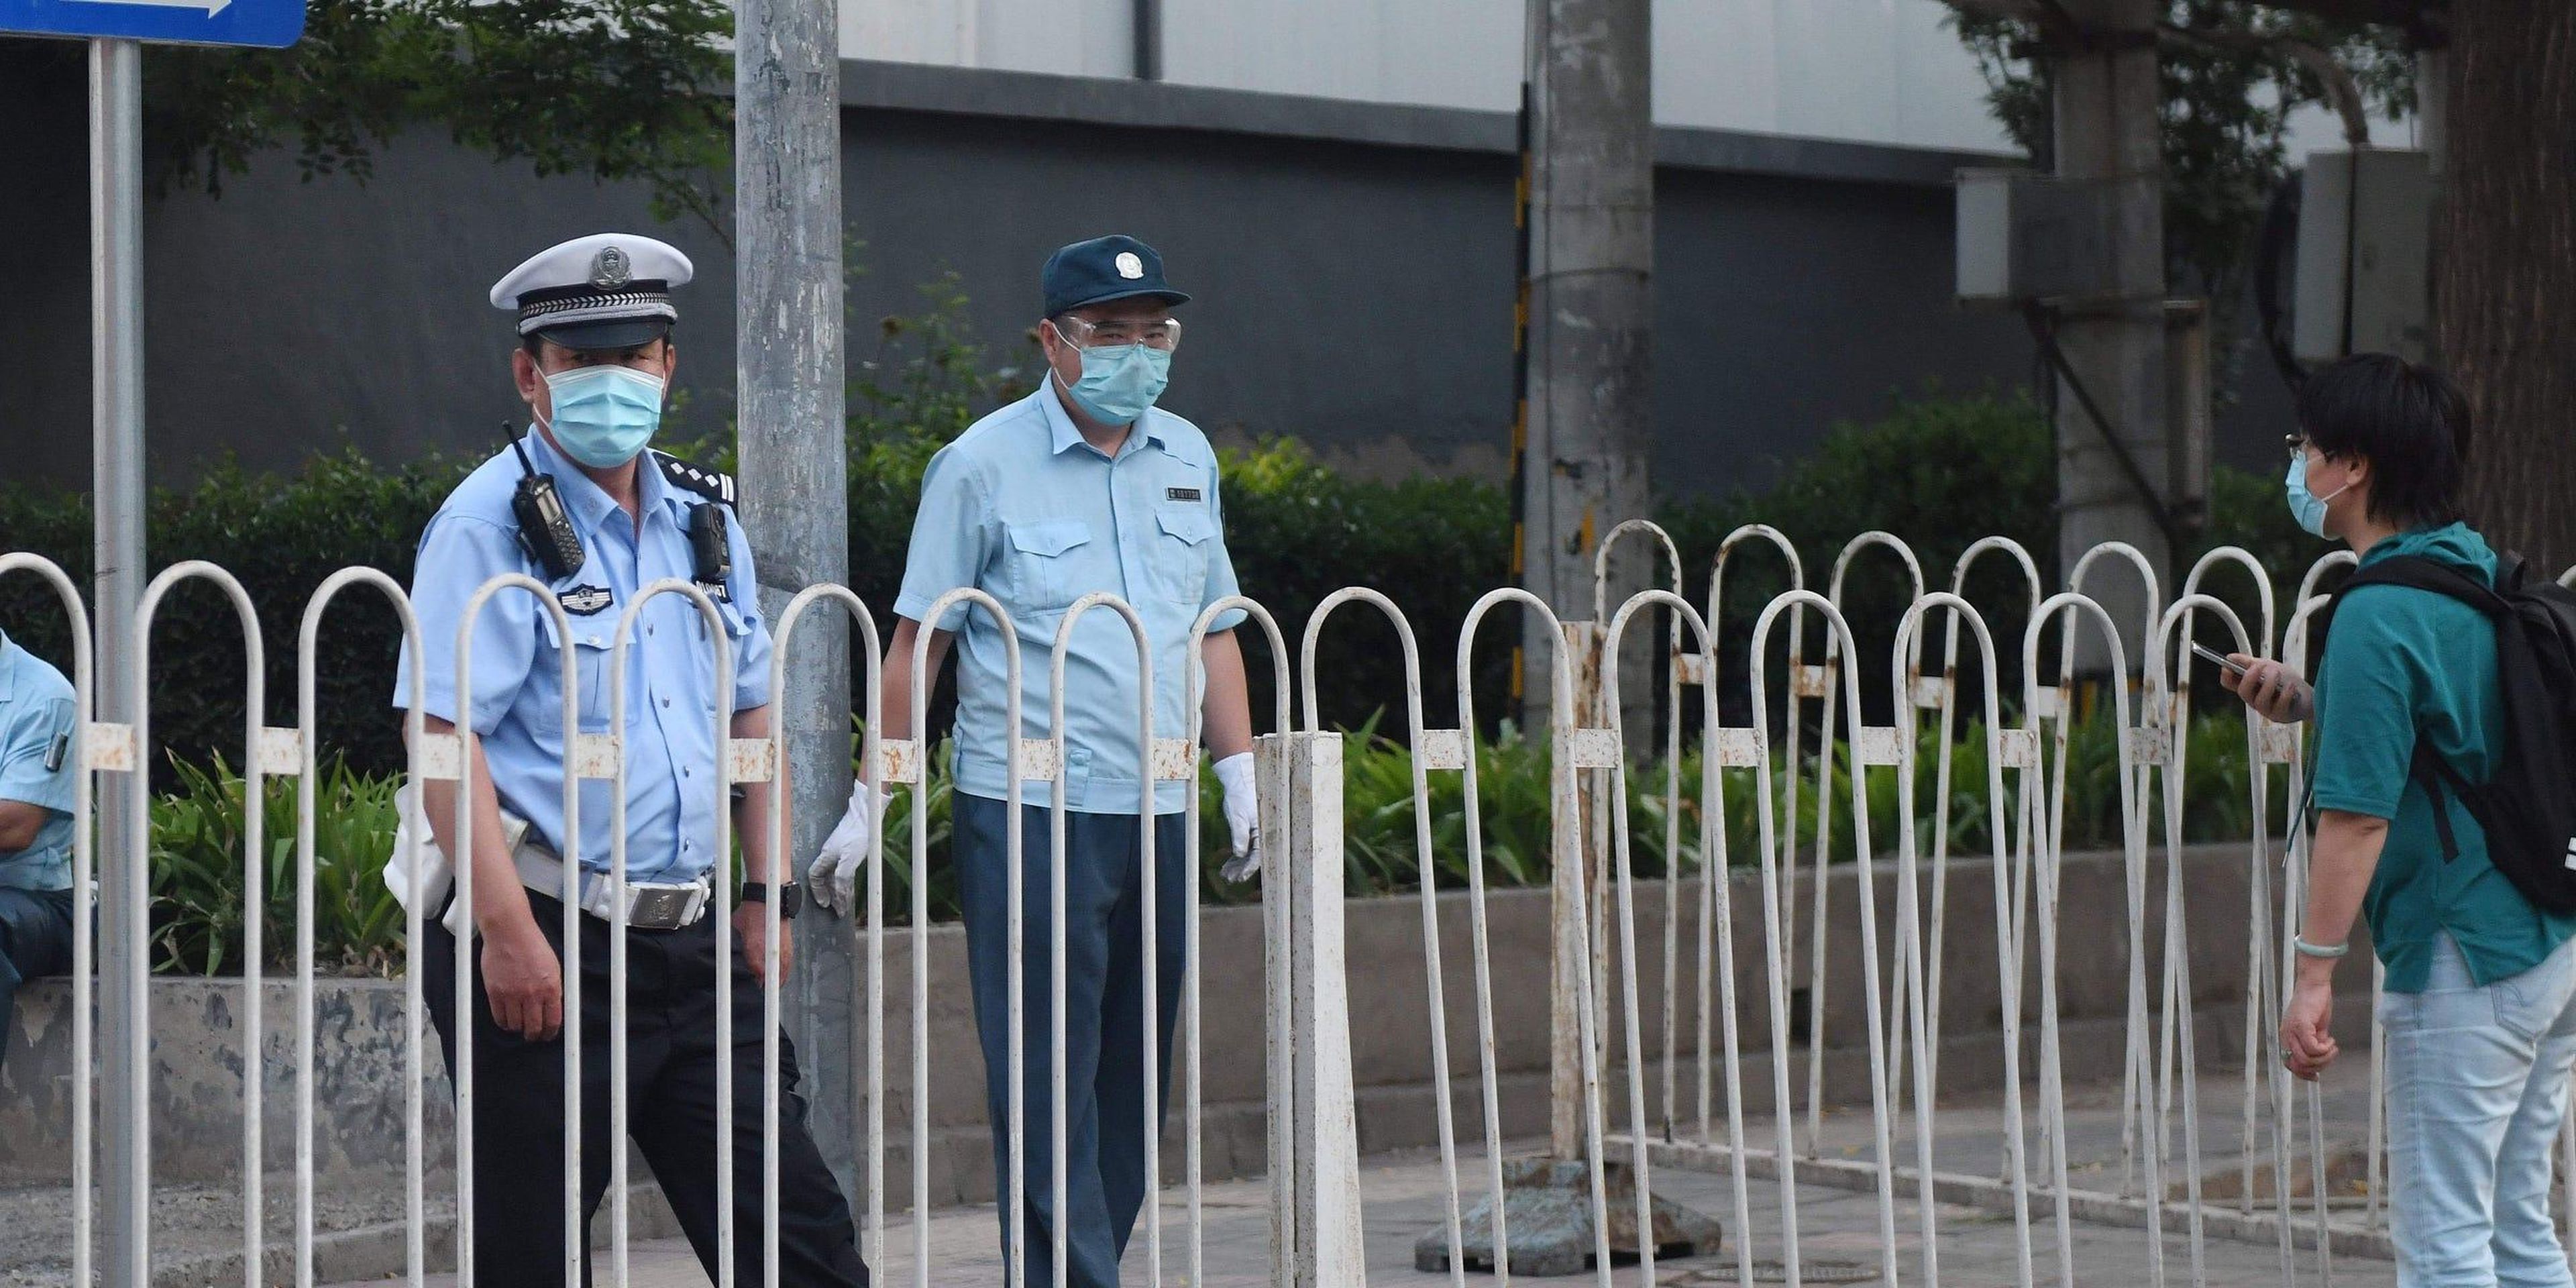 Un oficial de policía bloqueando la entrada a un complejo residencial aislado cerca del clausurado mercado Xinfadi en Pekín el 13 de junio de 2020.